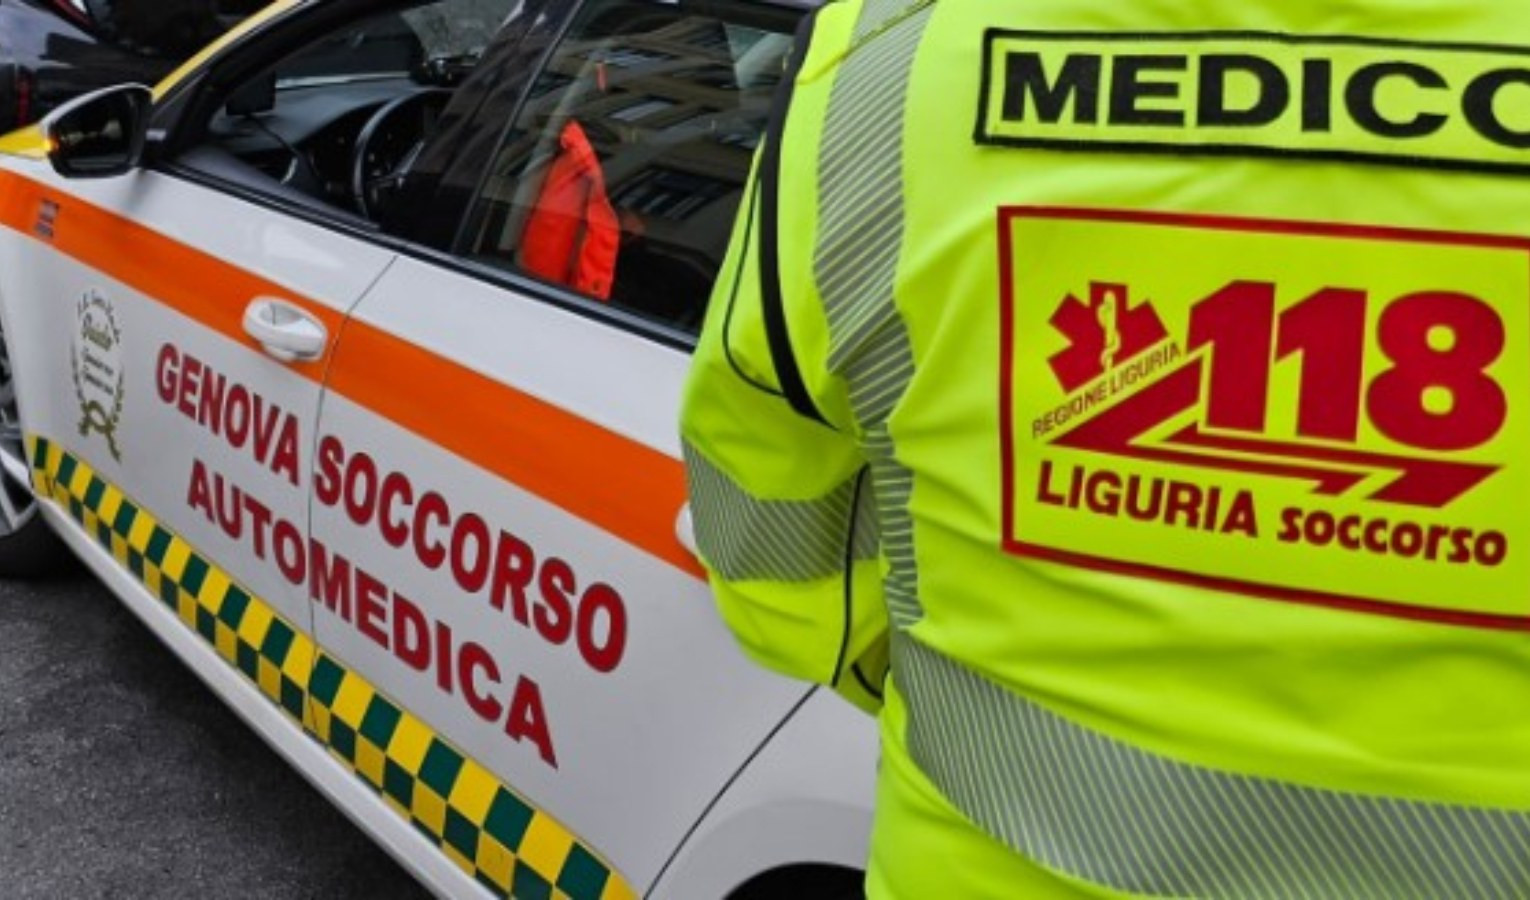 Genova, frontale autobus - carro attrezzi: 9 feriti